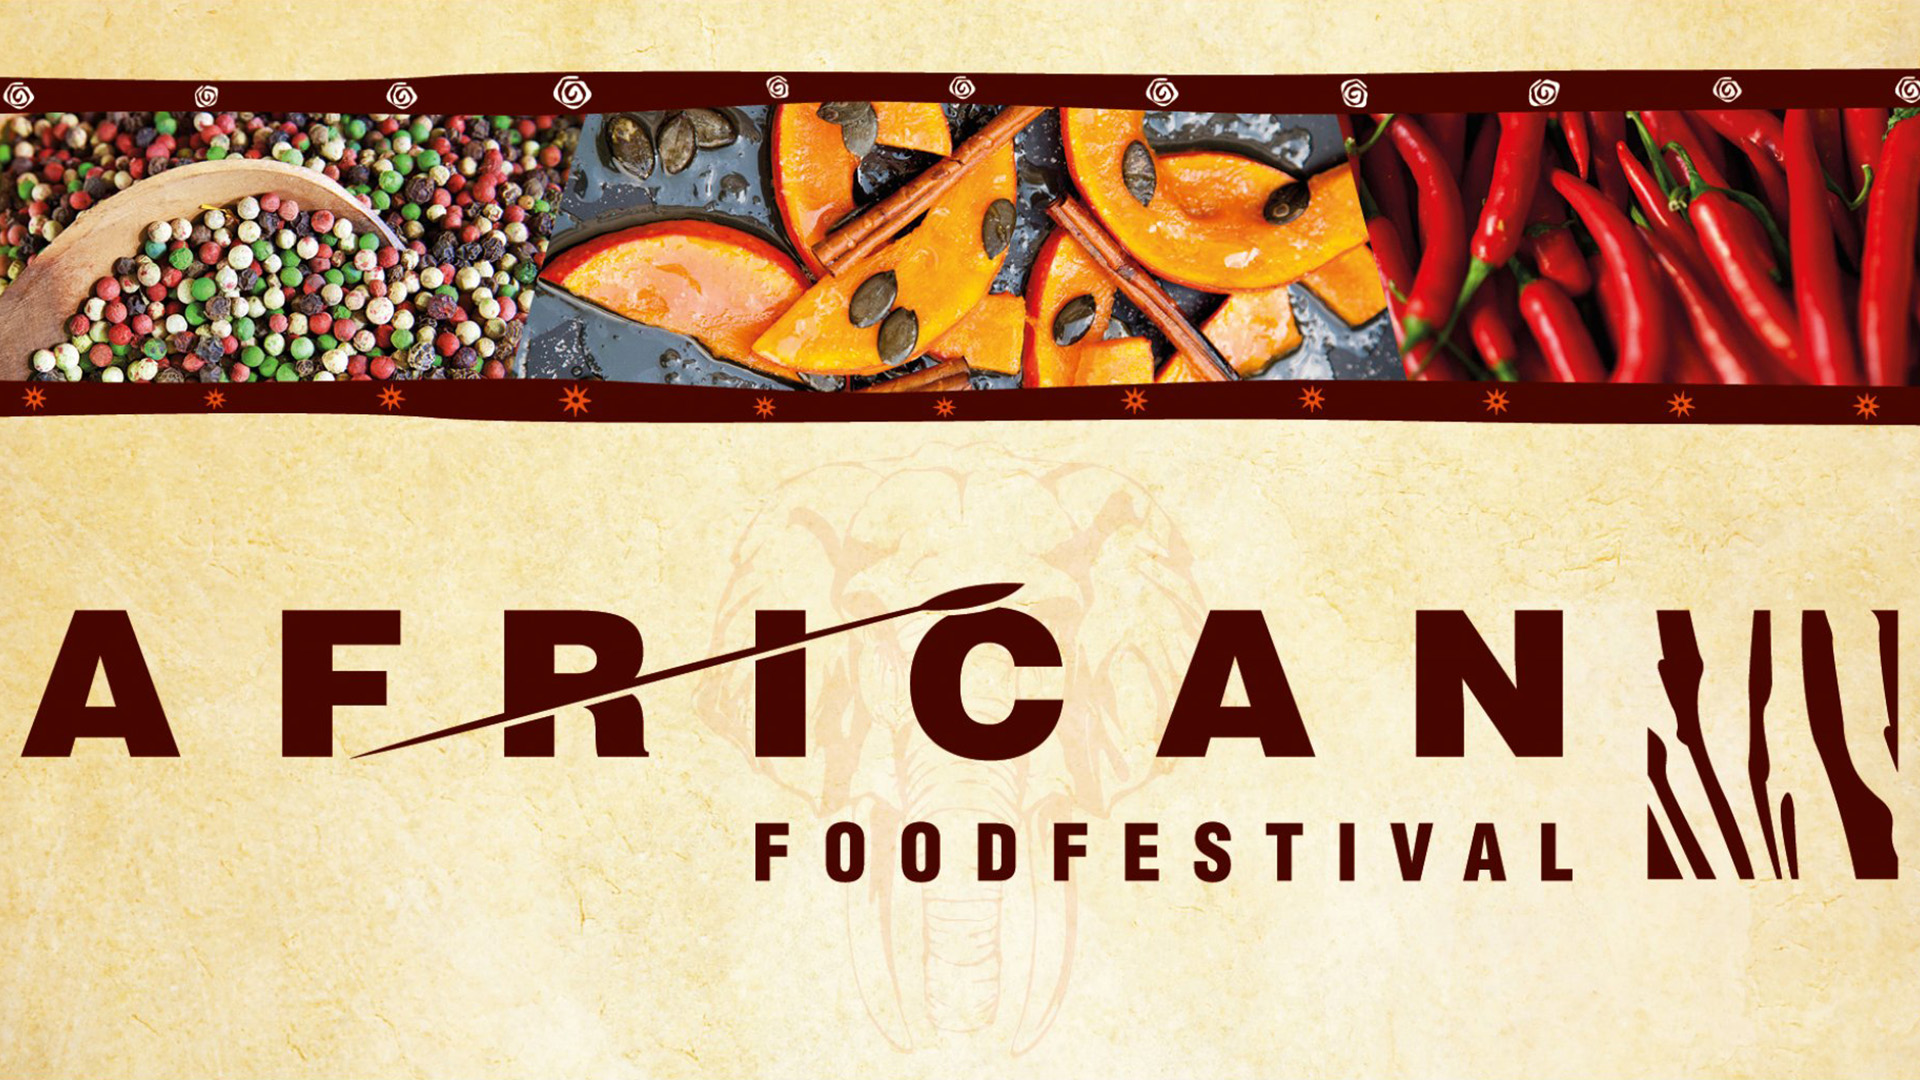 ep14 wm 291 african food festival full hd